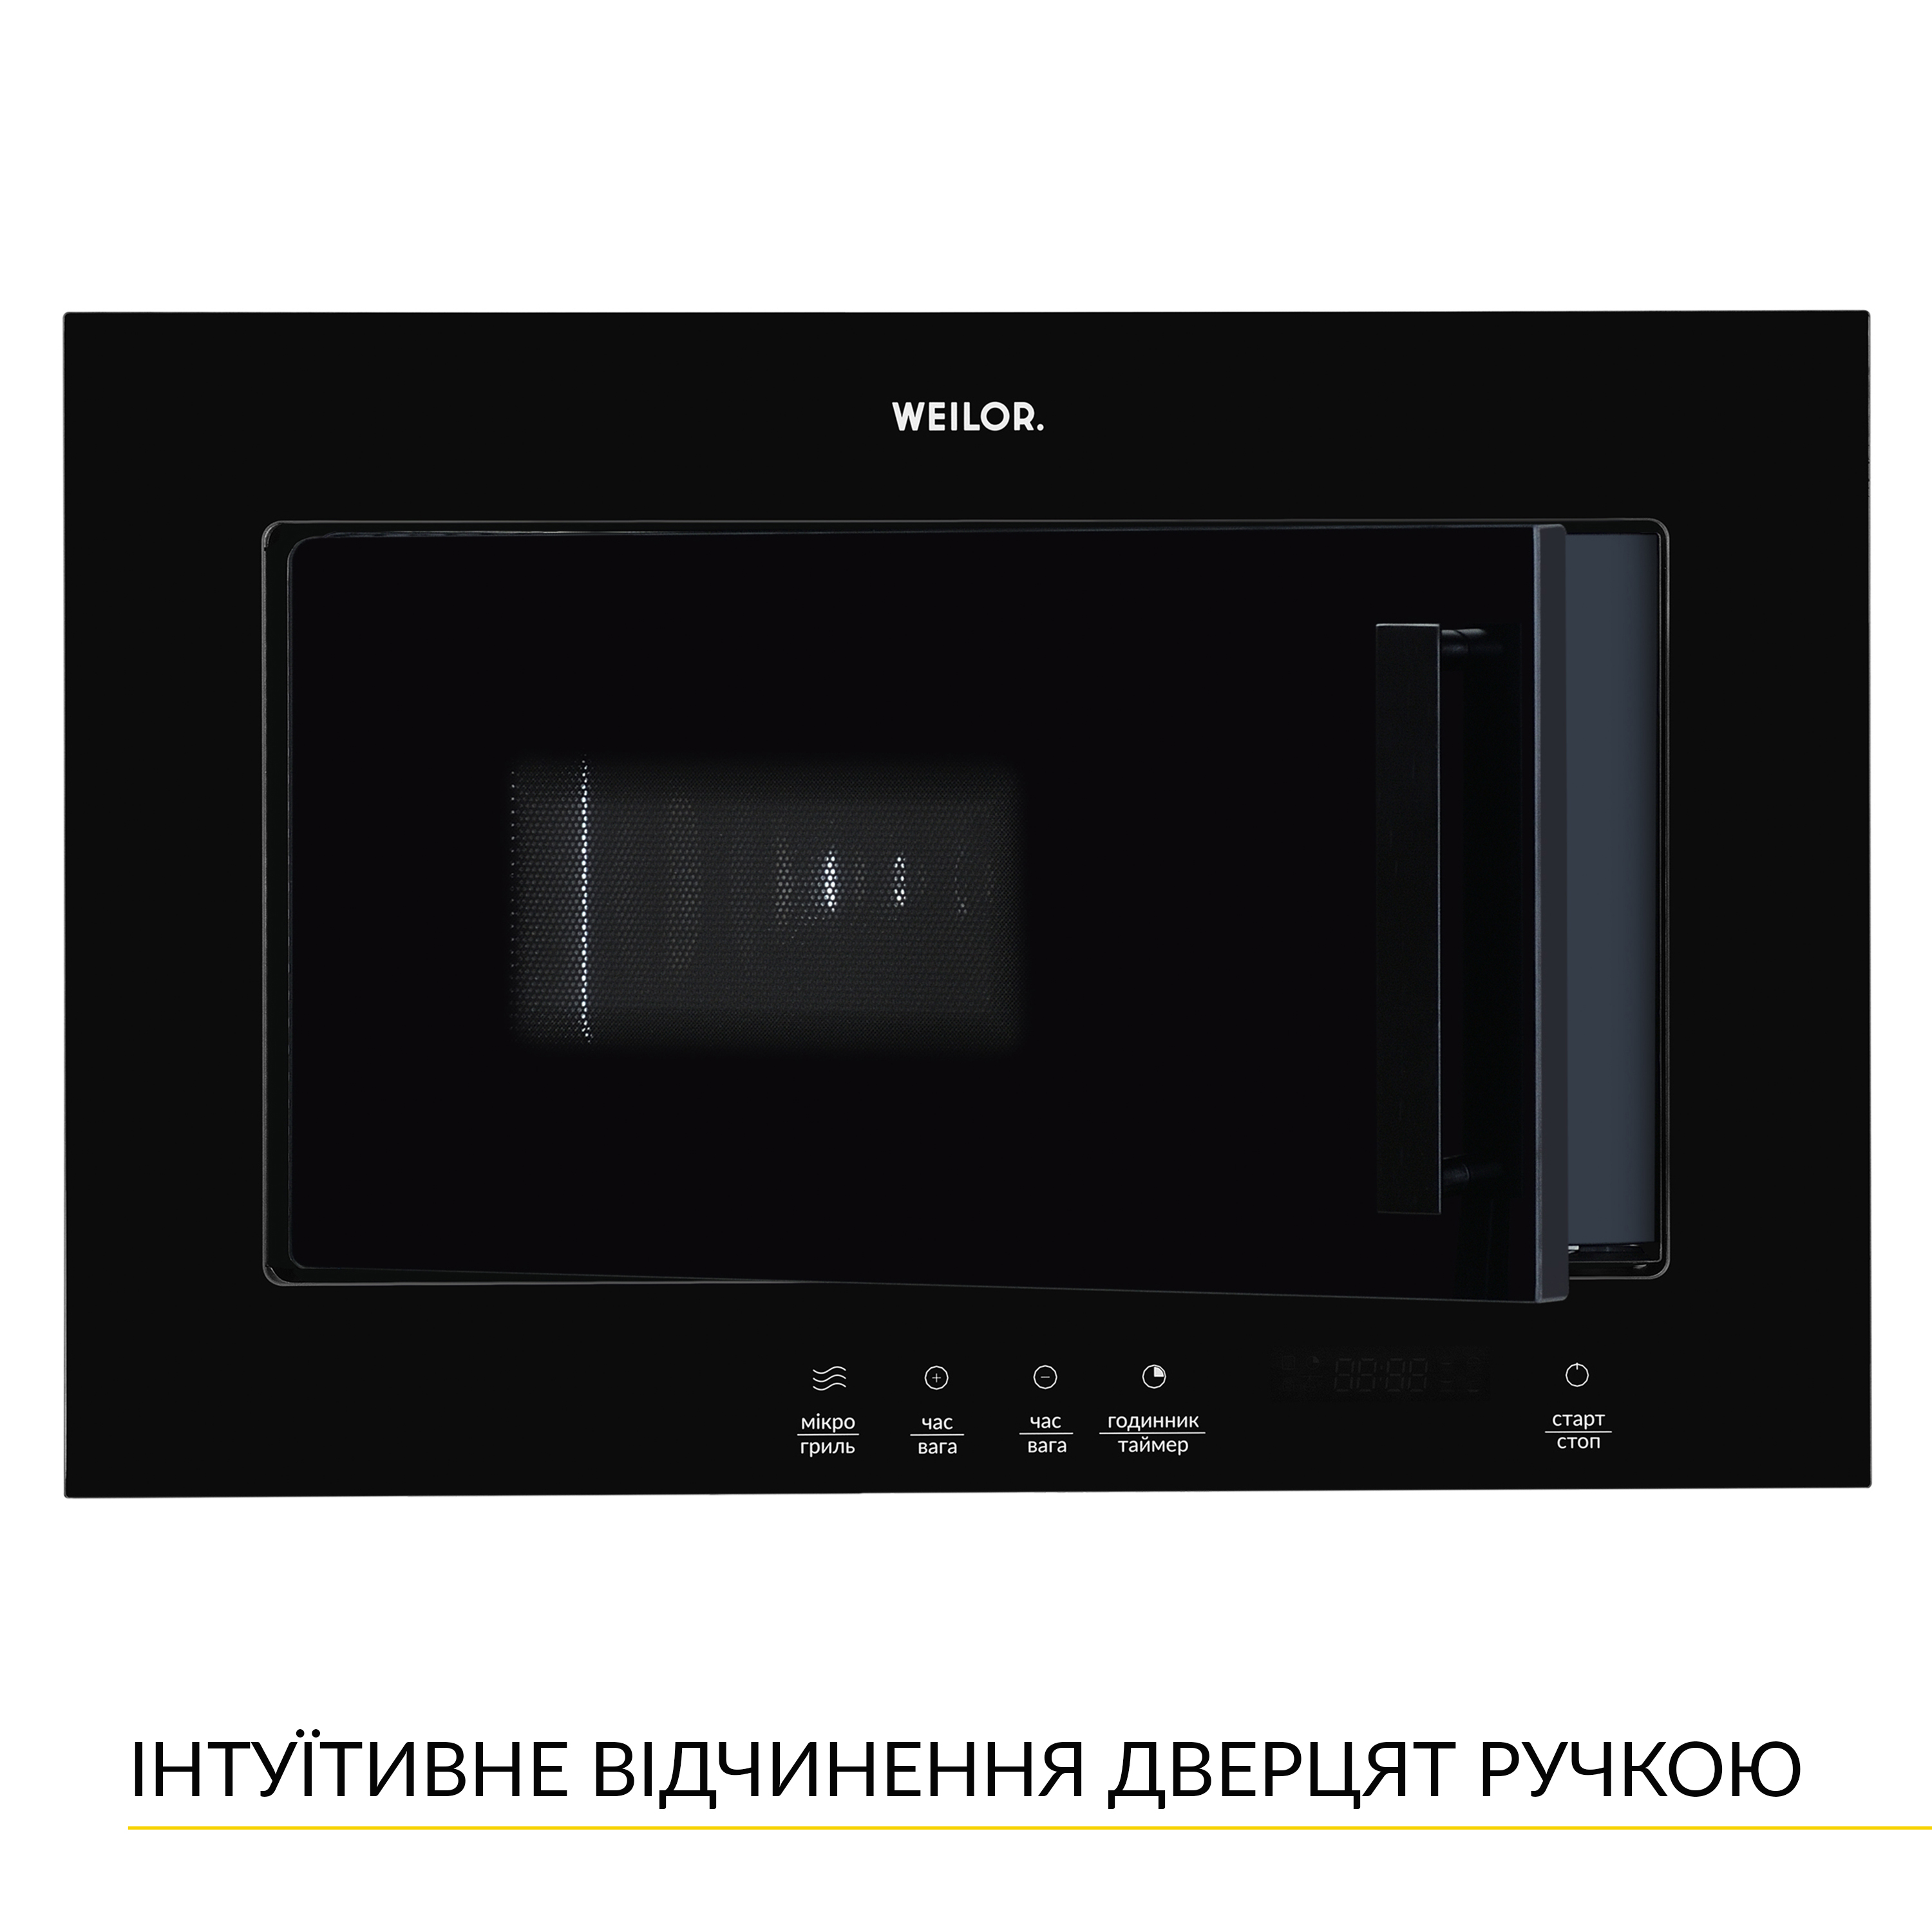 Микроволновая печь Weilor WBM 2041 GB обзор - фото 8